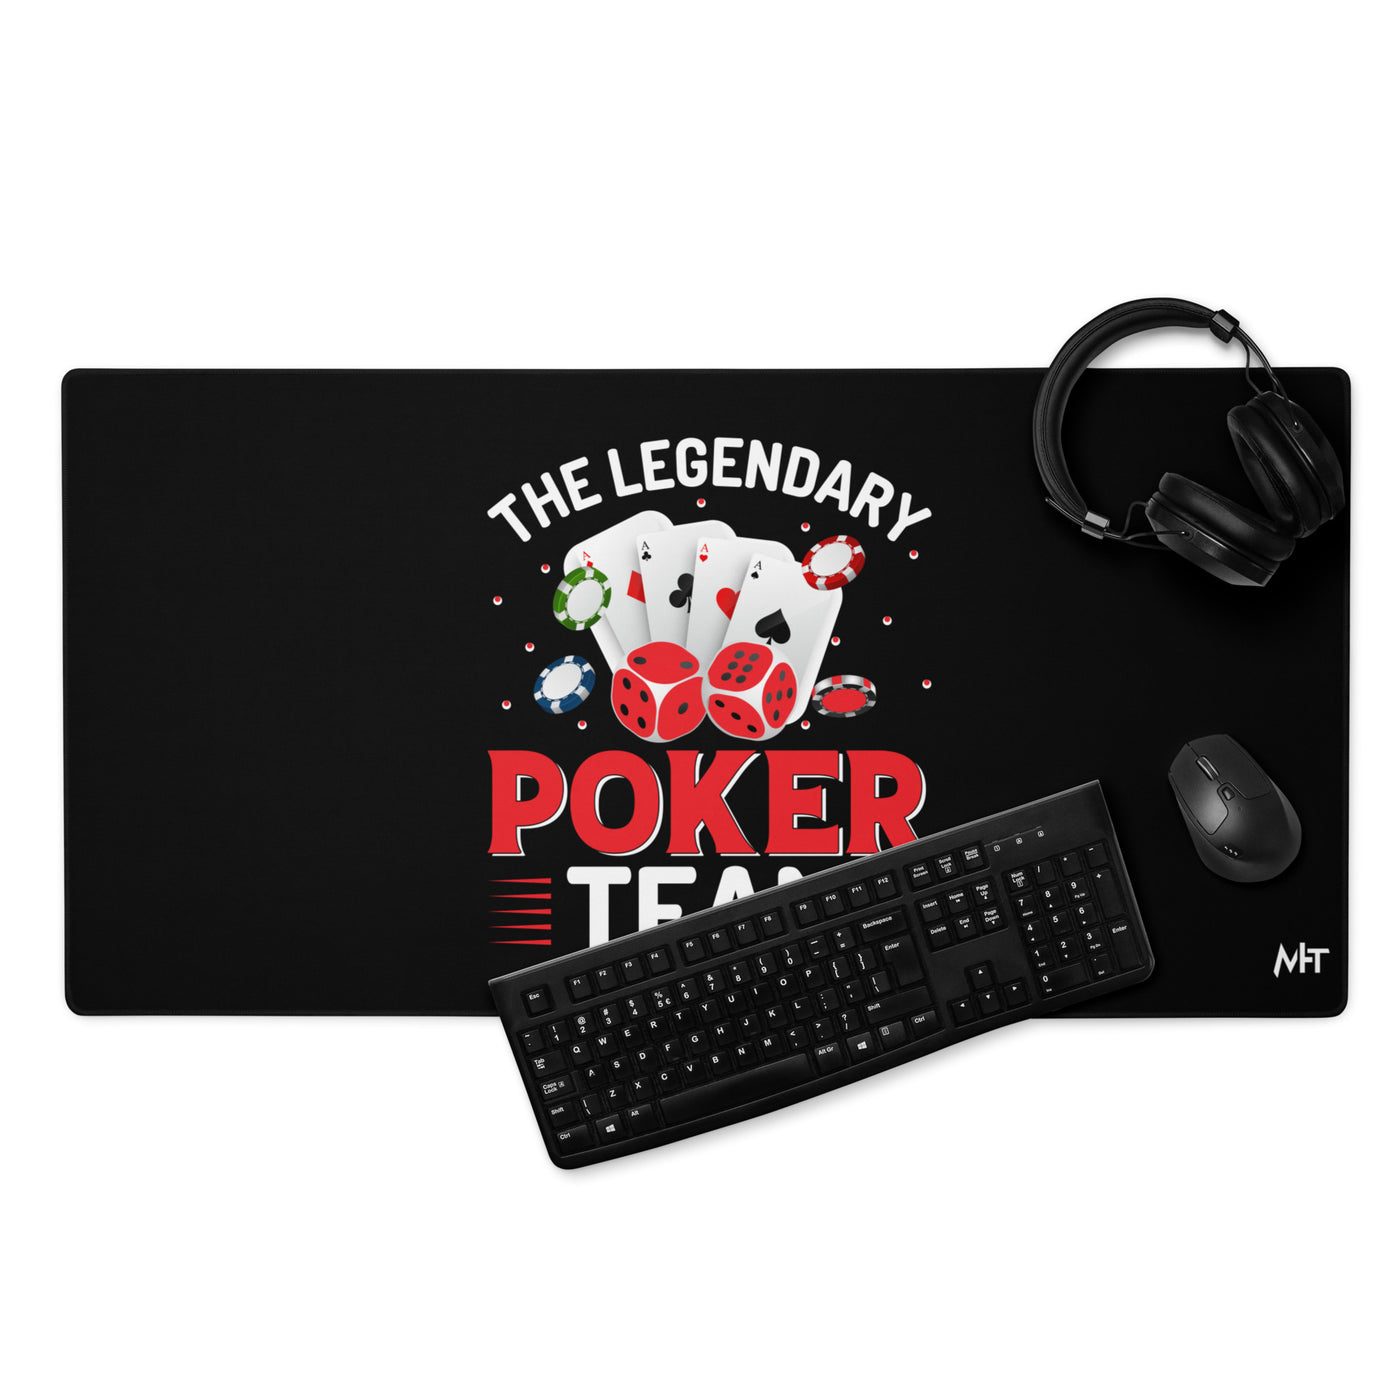 The Legendary Poker Team - Desk Mat